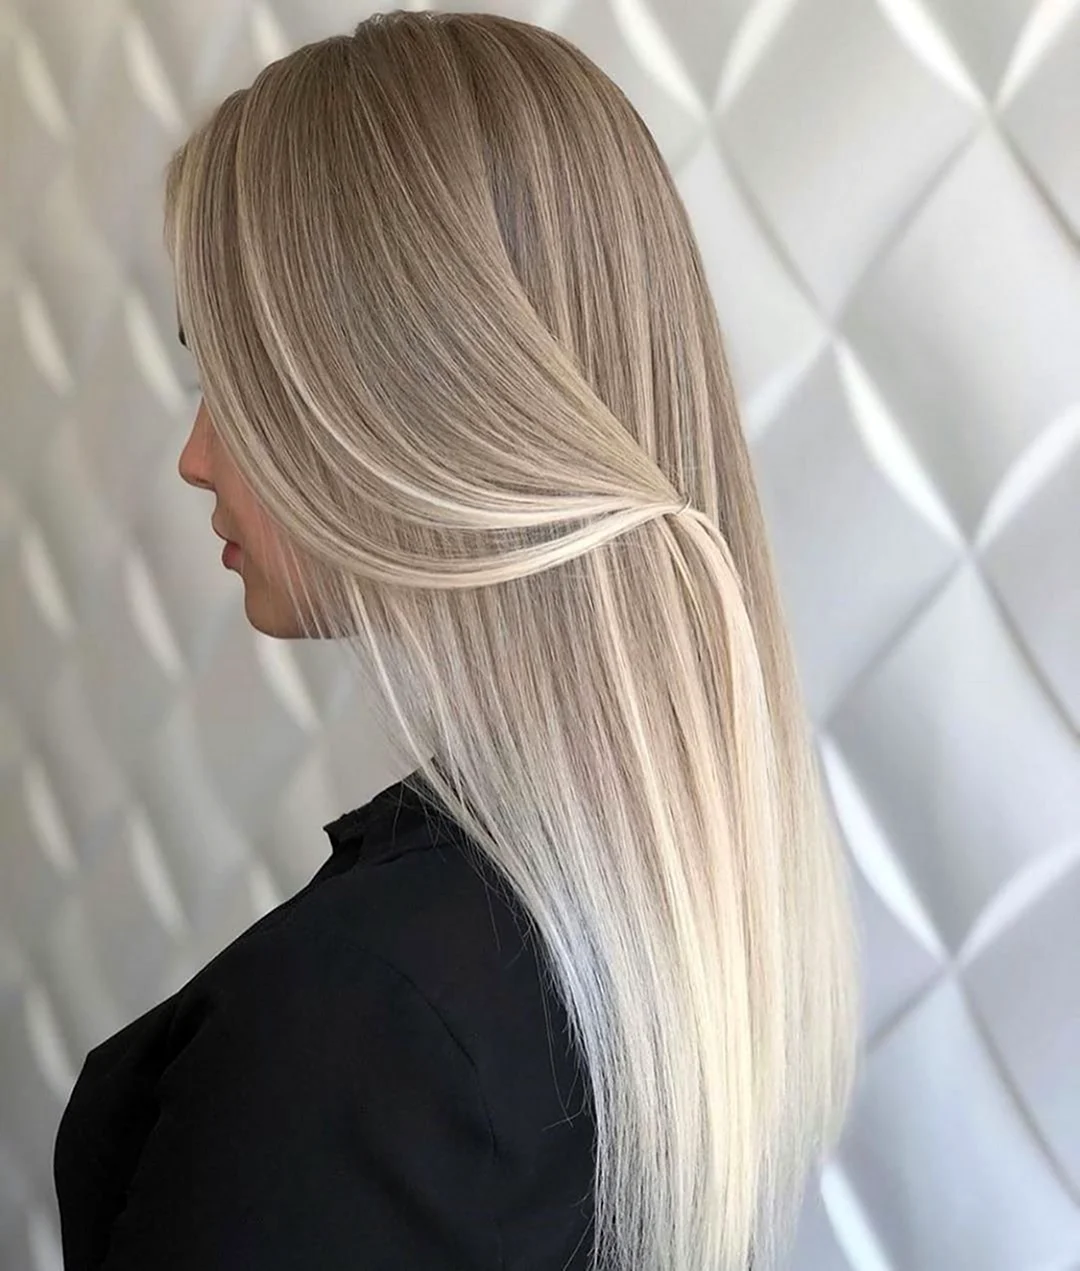 Рельефное окрашивание волос для блондинок